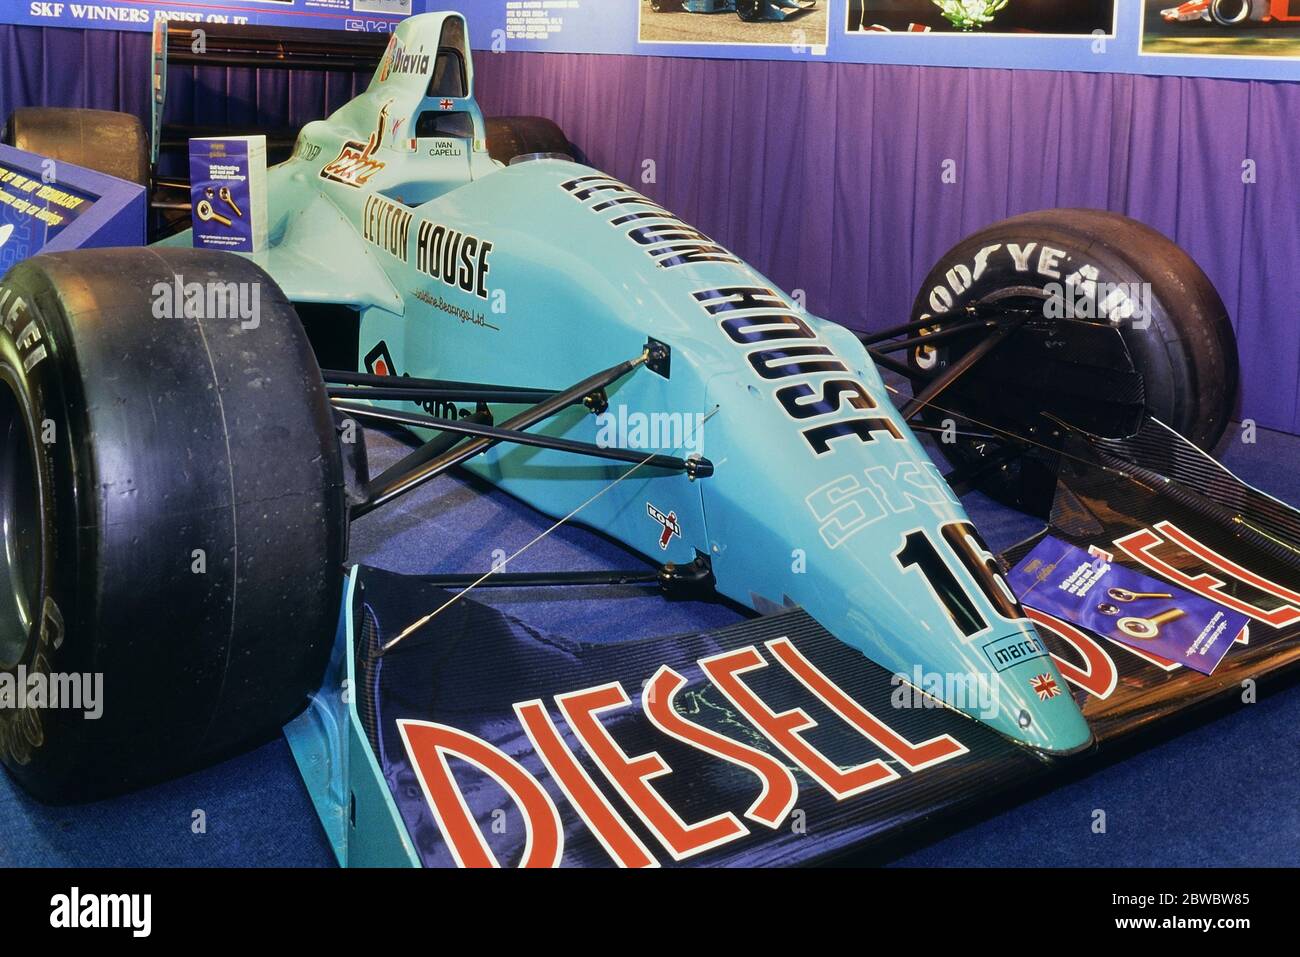 La vettura di Formula uno di Ivan capelli del marzo 881 in mostra al SALONE DELLE AUTO DA CORSA 1989. Olympia 2, Londra, Inghilterra, Regno Unito, GB. 4-8 gennaio 1989 Foto Stock